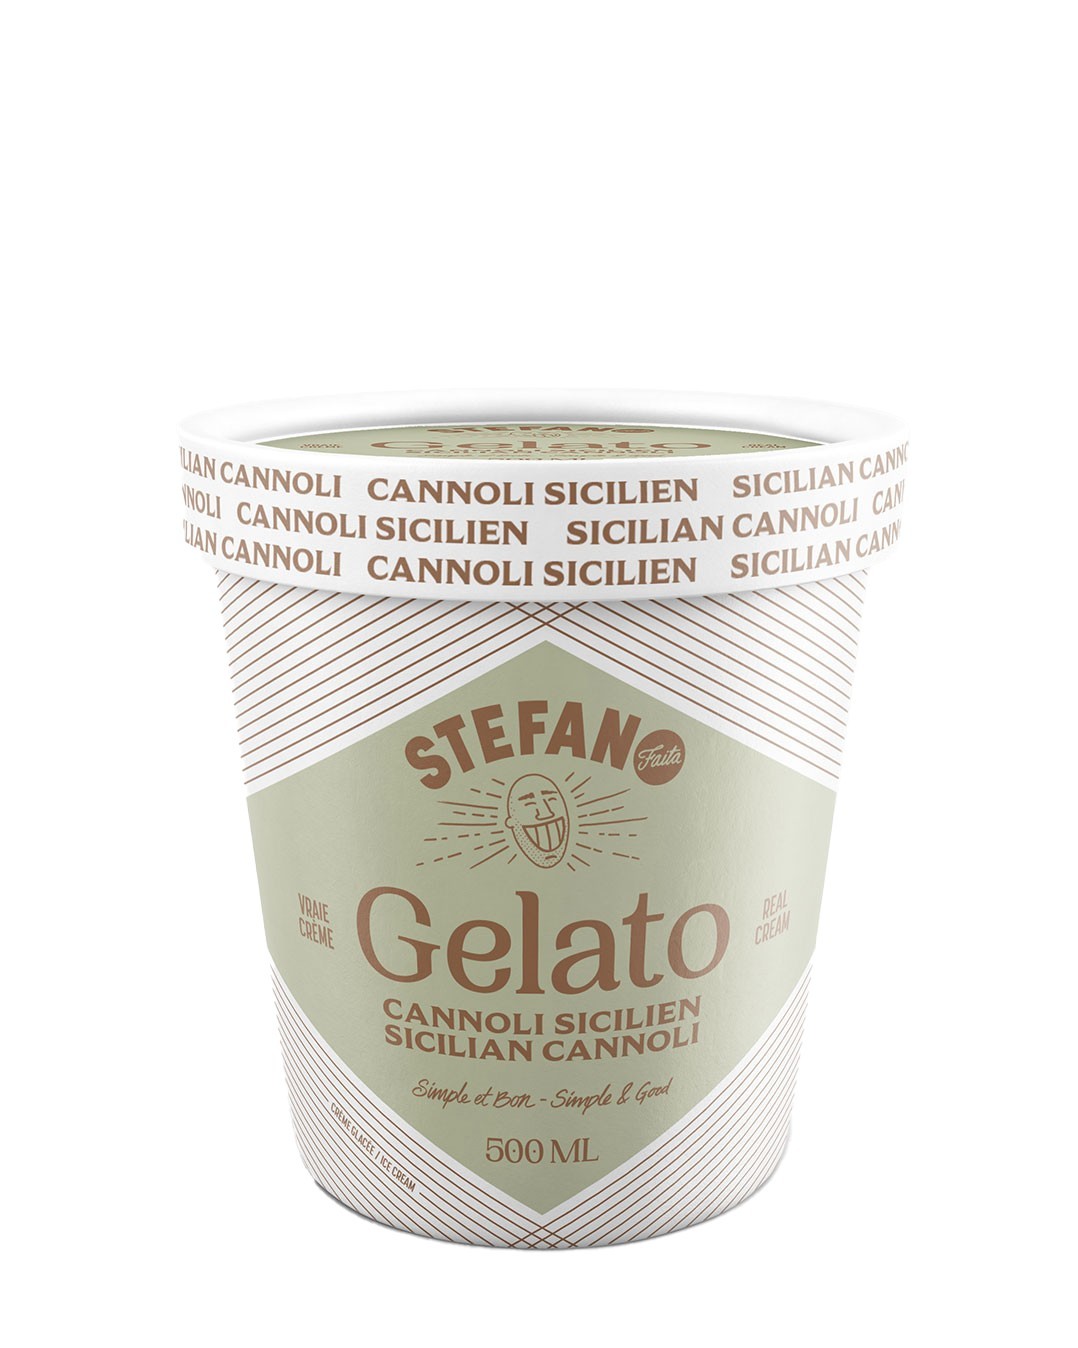 Et si on jumelait la magie des cannoli à celle de la crème glacée? Le gelato cannoli sicilien Stefano s’occupe justement d’unir ces deux petites merveilles pour créer une douceur vraiment ensoleillée. Attendez-vous à tomber sous le charme des tourbillons de caramel à l’orange et de la riche crème de pistache rehaussés de croquants éclats de cornet gaufré trempés dans le chocolat noir 70 %. Pour un gelato fièrement préparé au Québec, on peut dire que cette saveur nous fait voyager. Une nouveauté qui aura tôt fait de devenir votre préférée!